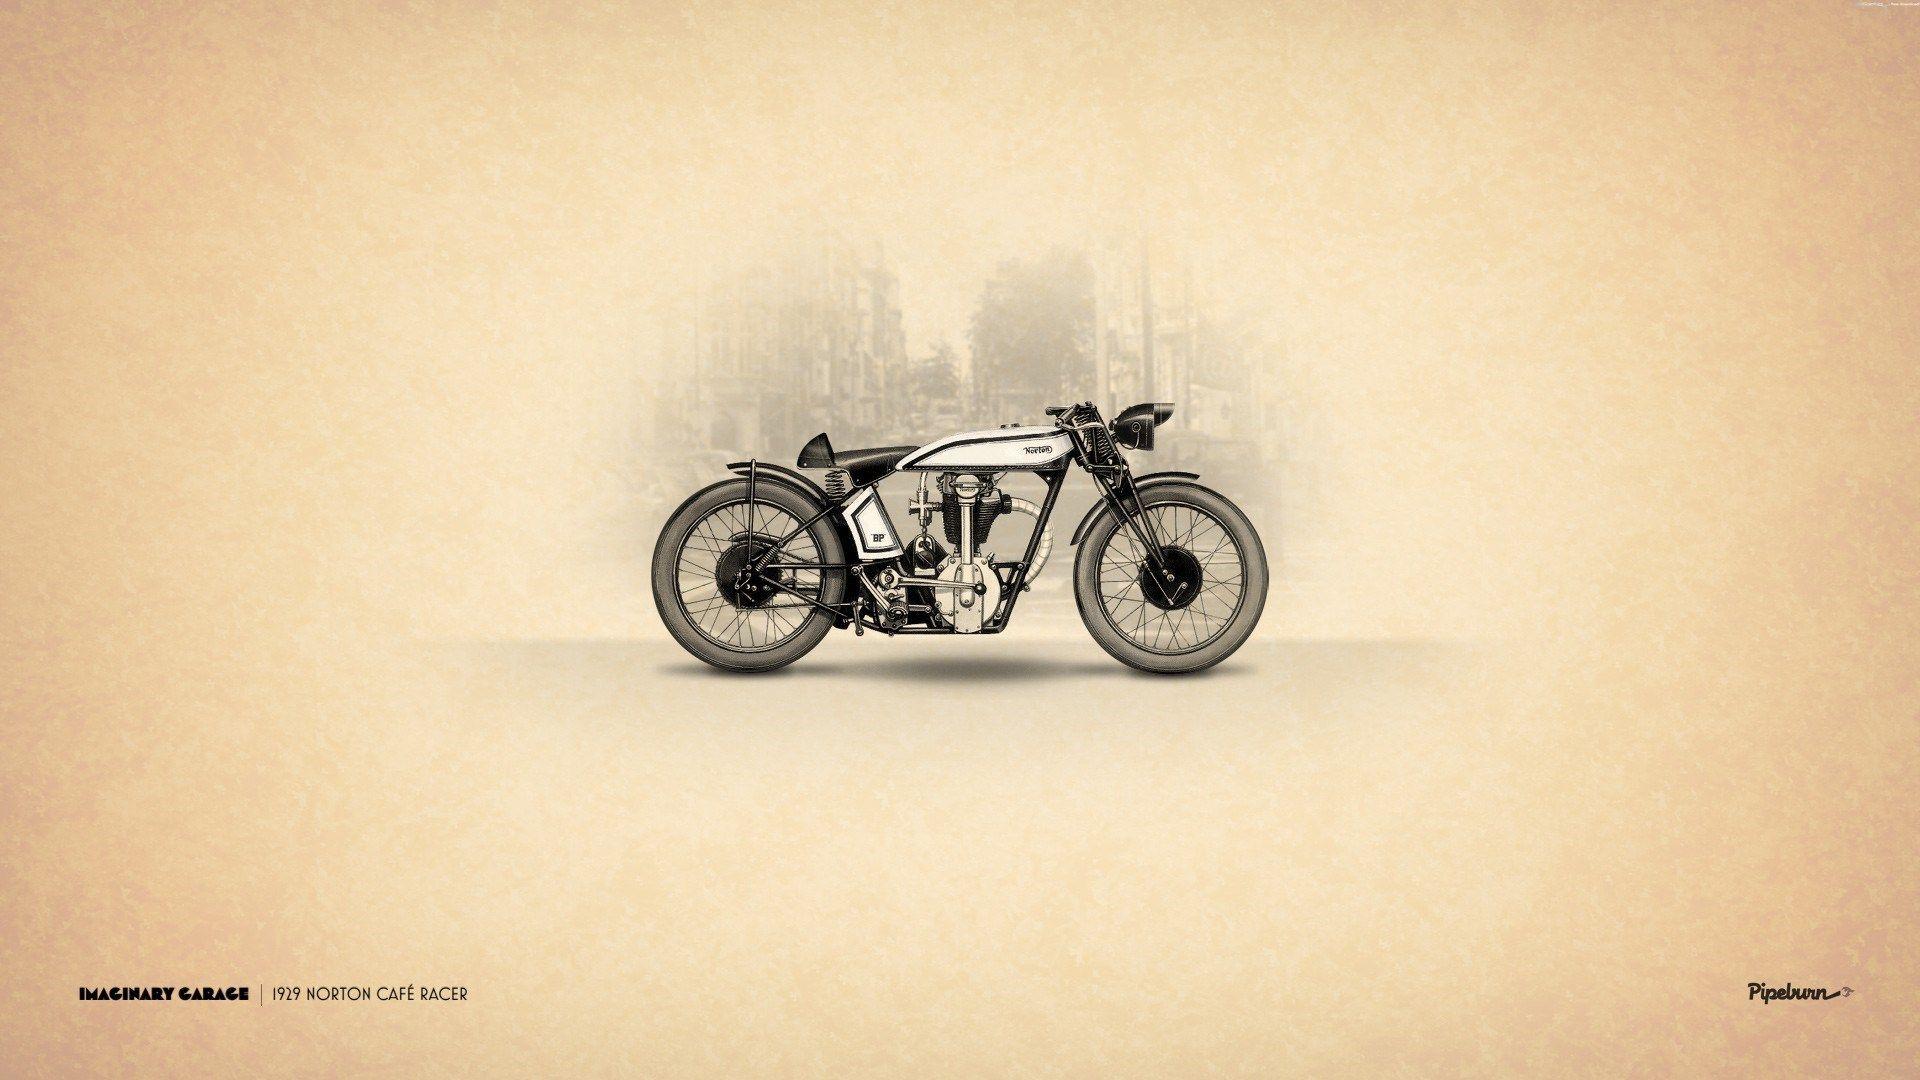 Vintage Motorcycle Wallpaper Desktop. Norton cafe racer, Retro